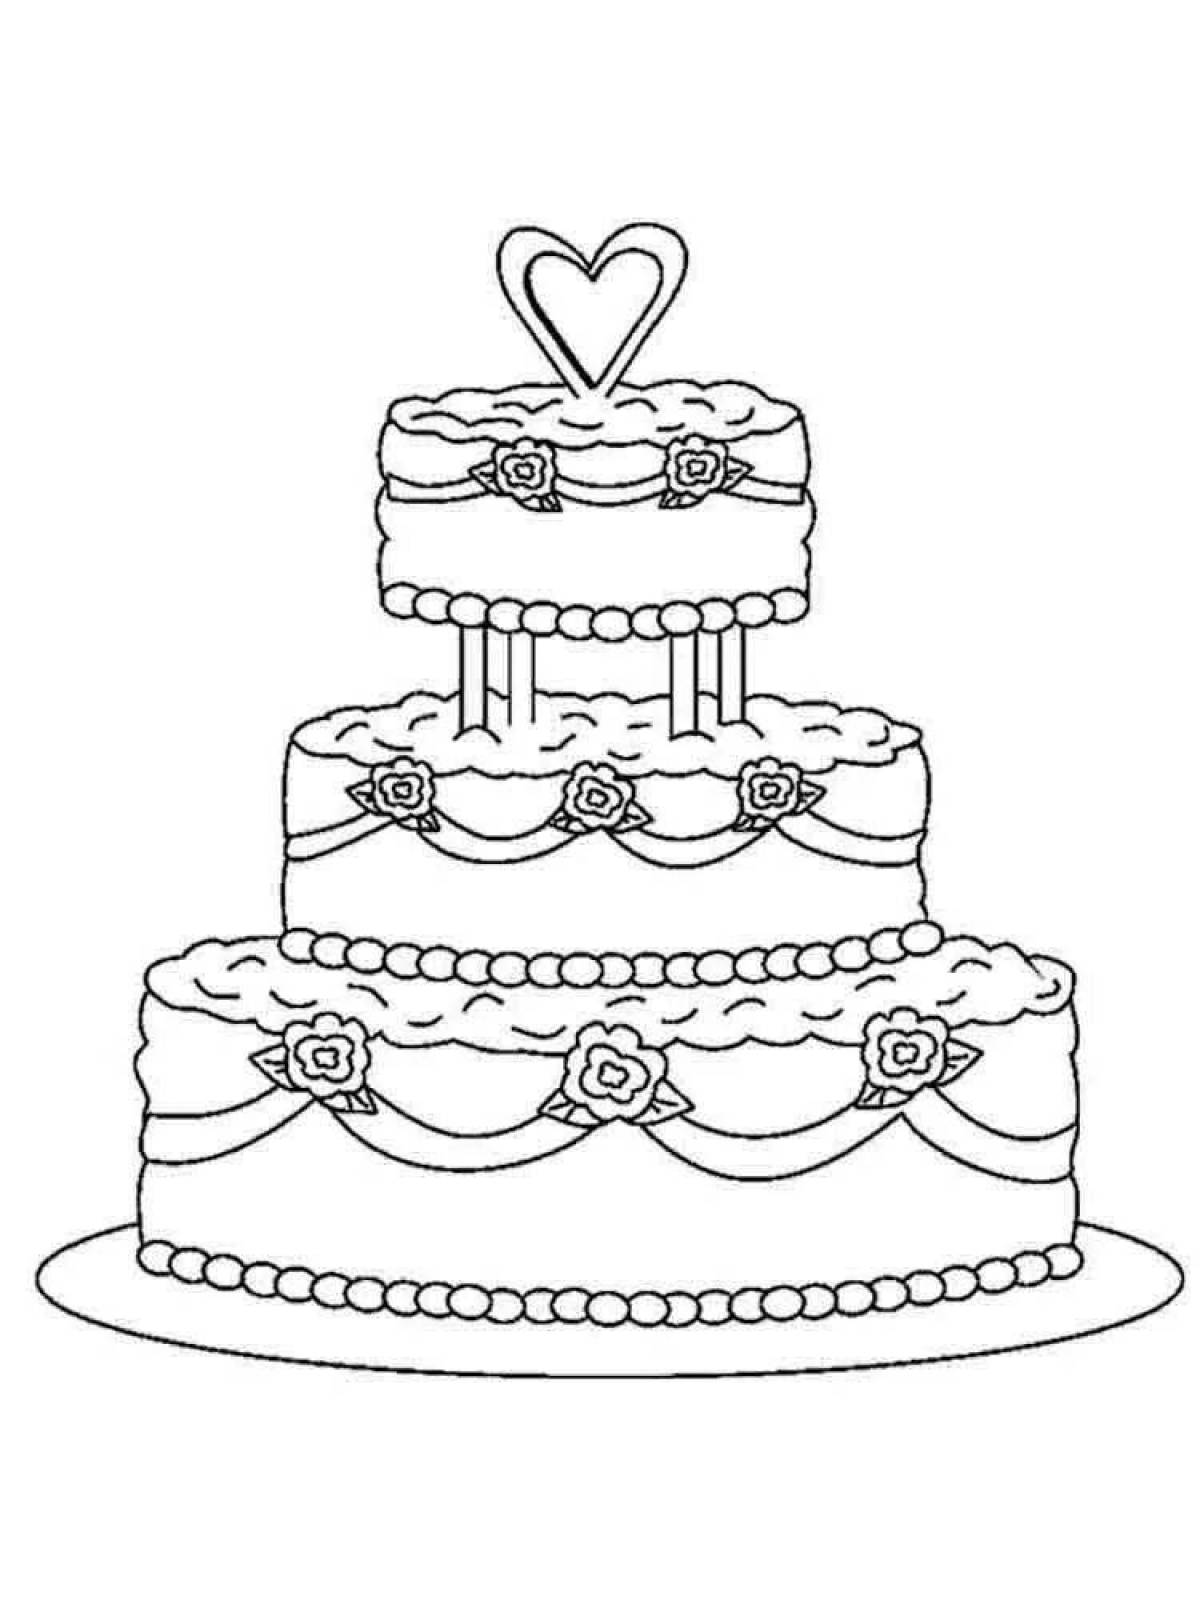 Распечатать картинку на торт. Раскраска торт. Торт рисунок. Раскраска торт на день рождения. Рисунок торта для срисовки.